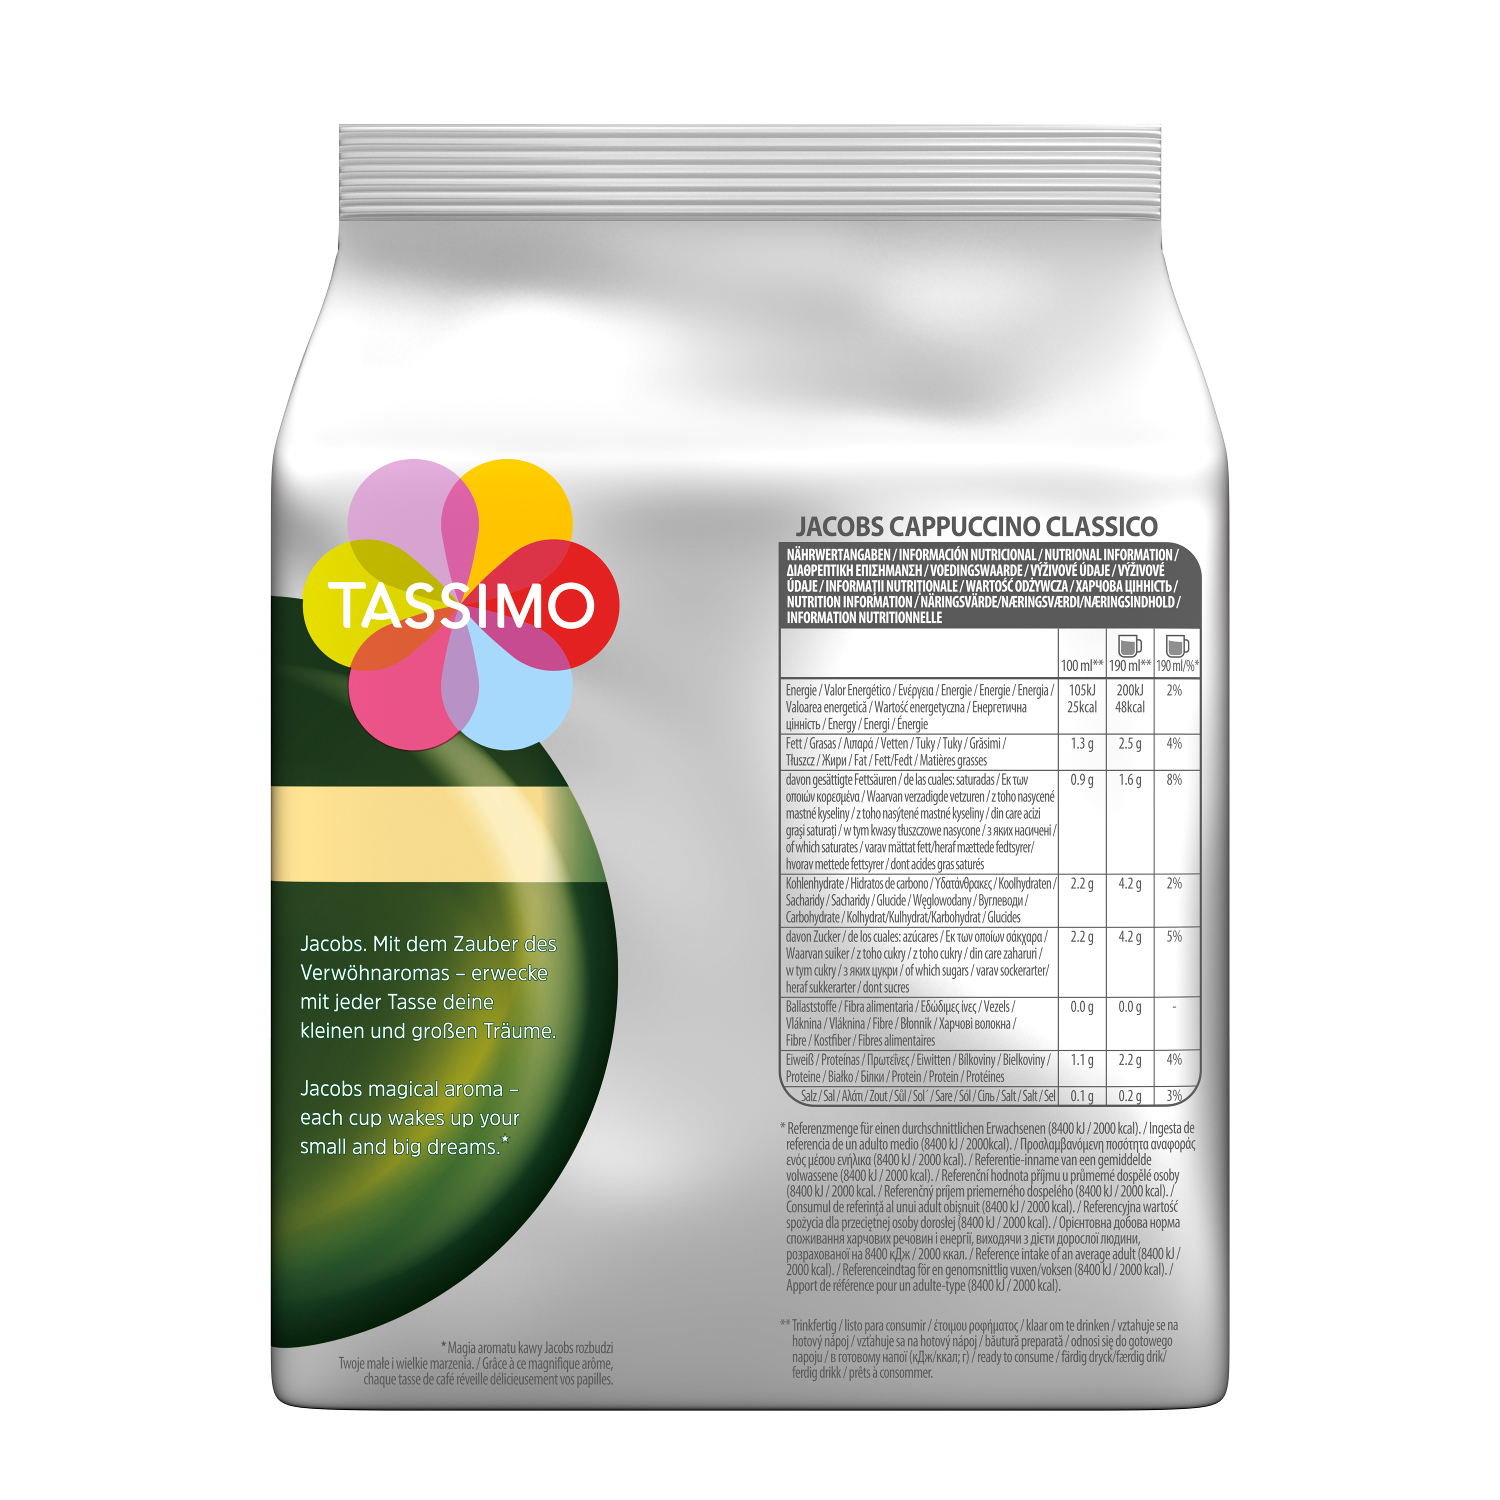 Maschine Cappuccino Creamy TASSIMO System)) (Tassimo Collection Kaffeekapseln Latte Milka Classico (T-Disc Macchiato